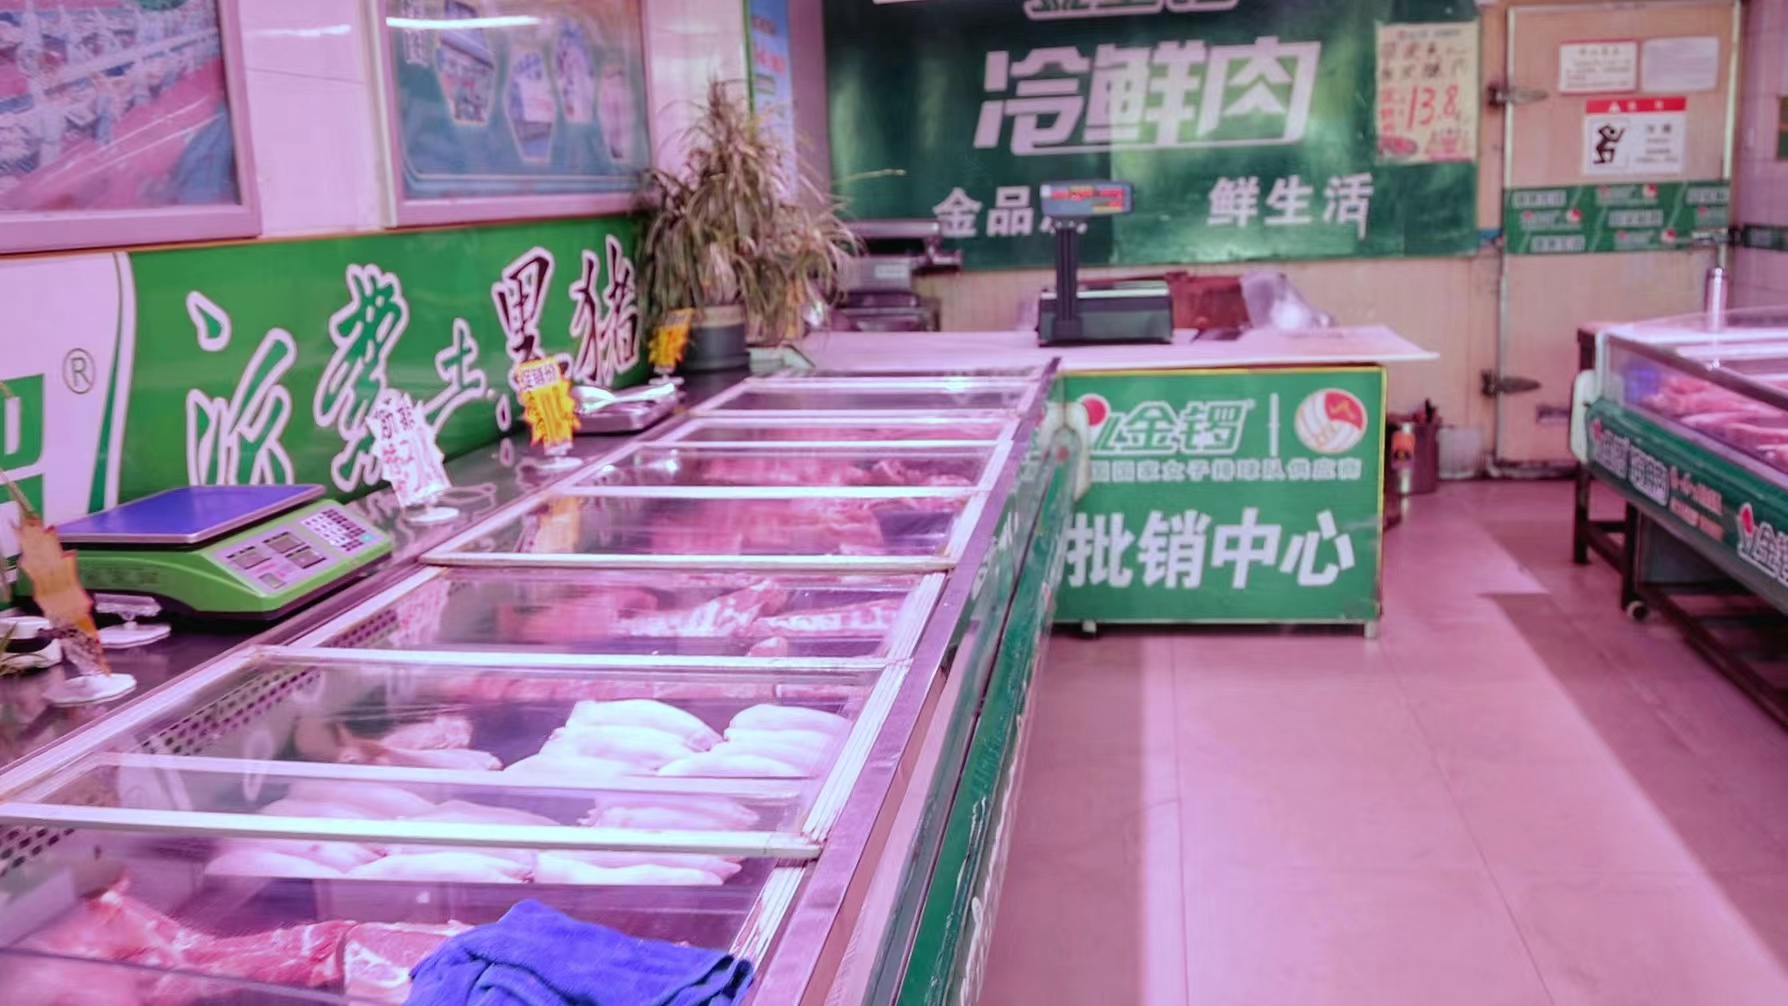 上海农产品中心批发市场某品牌猪肉批销中心 澎湃新闻记者 邹桥 摄